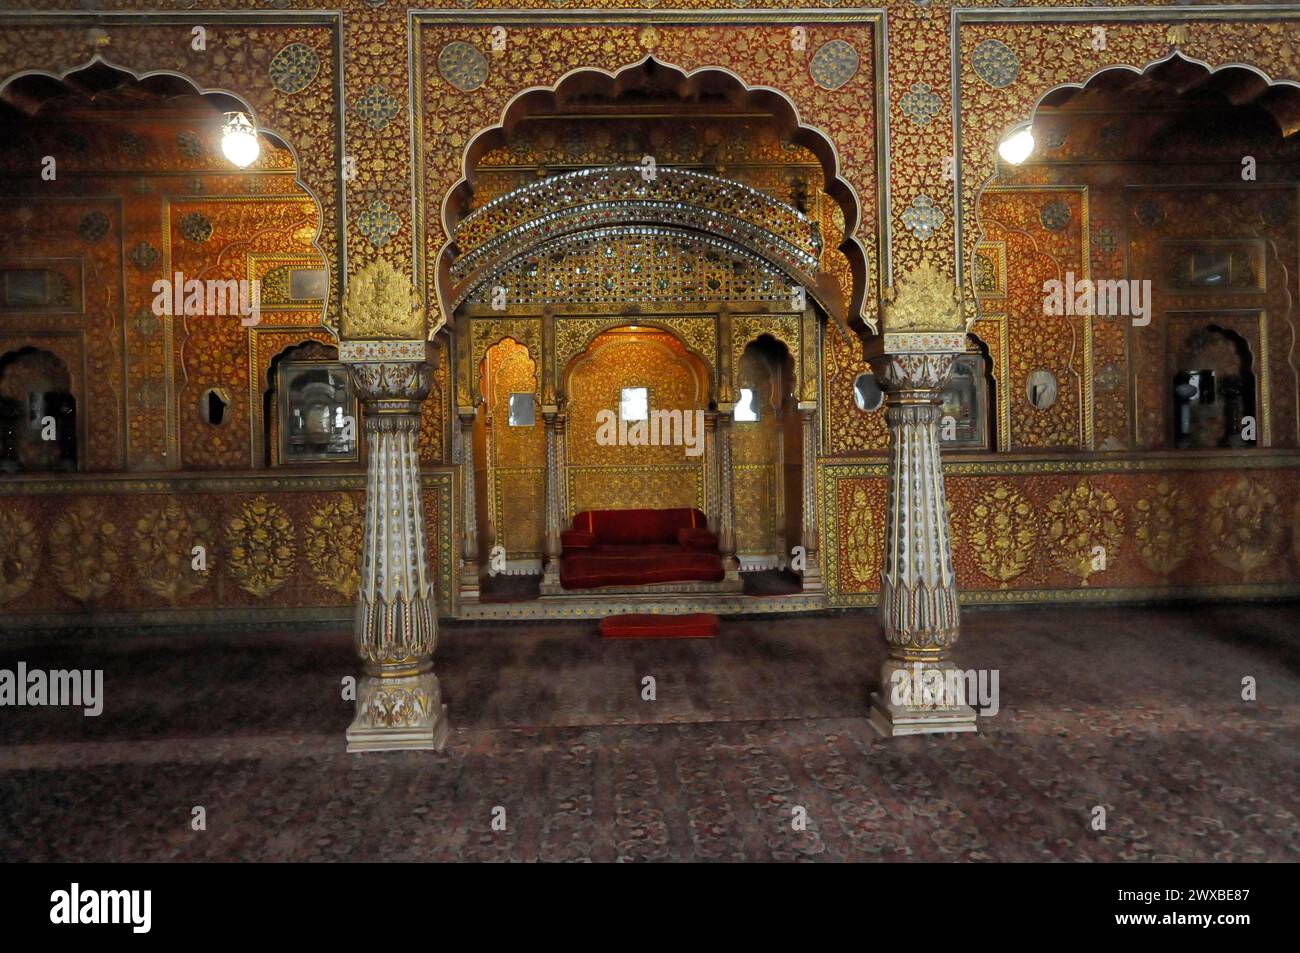 Opulent dekoriertes Interieur mit Säulen und rotem Thron, Jaipur, Rajasthan, Indien Stockfoto